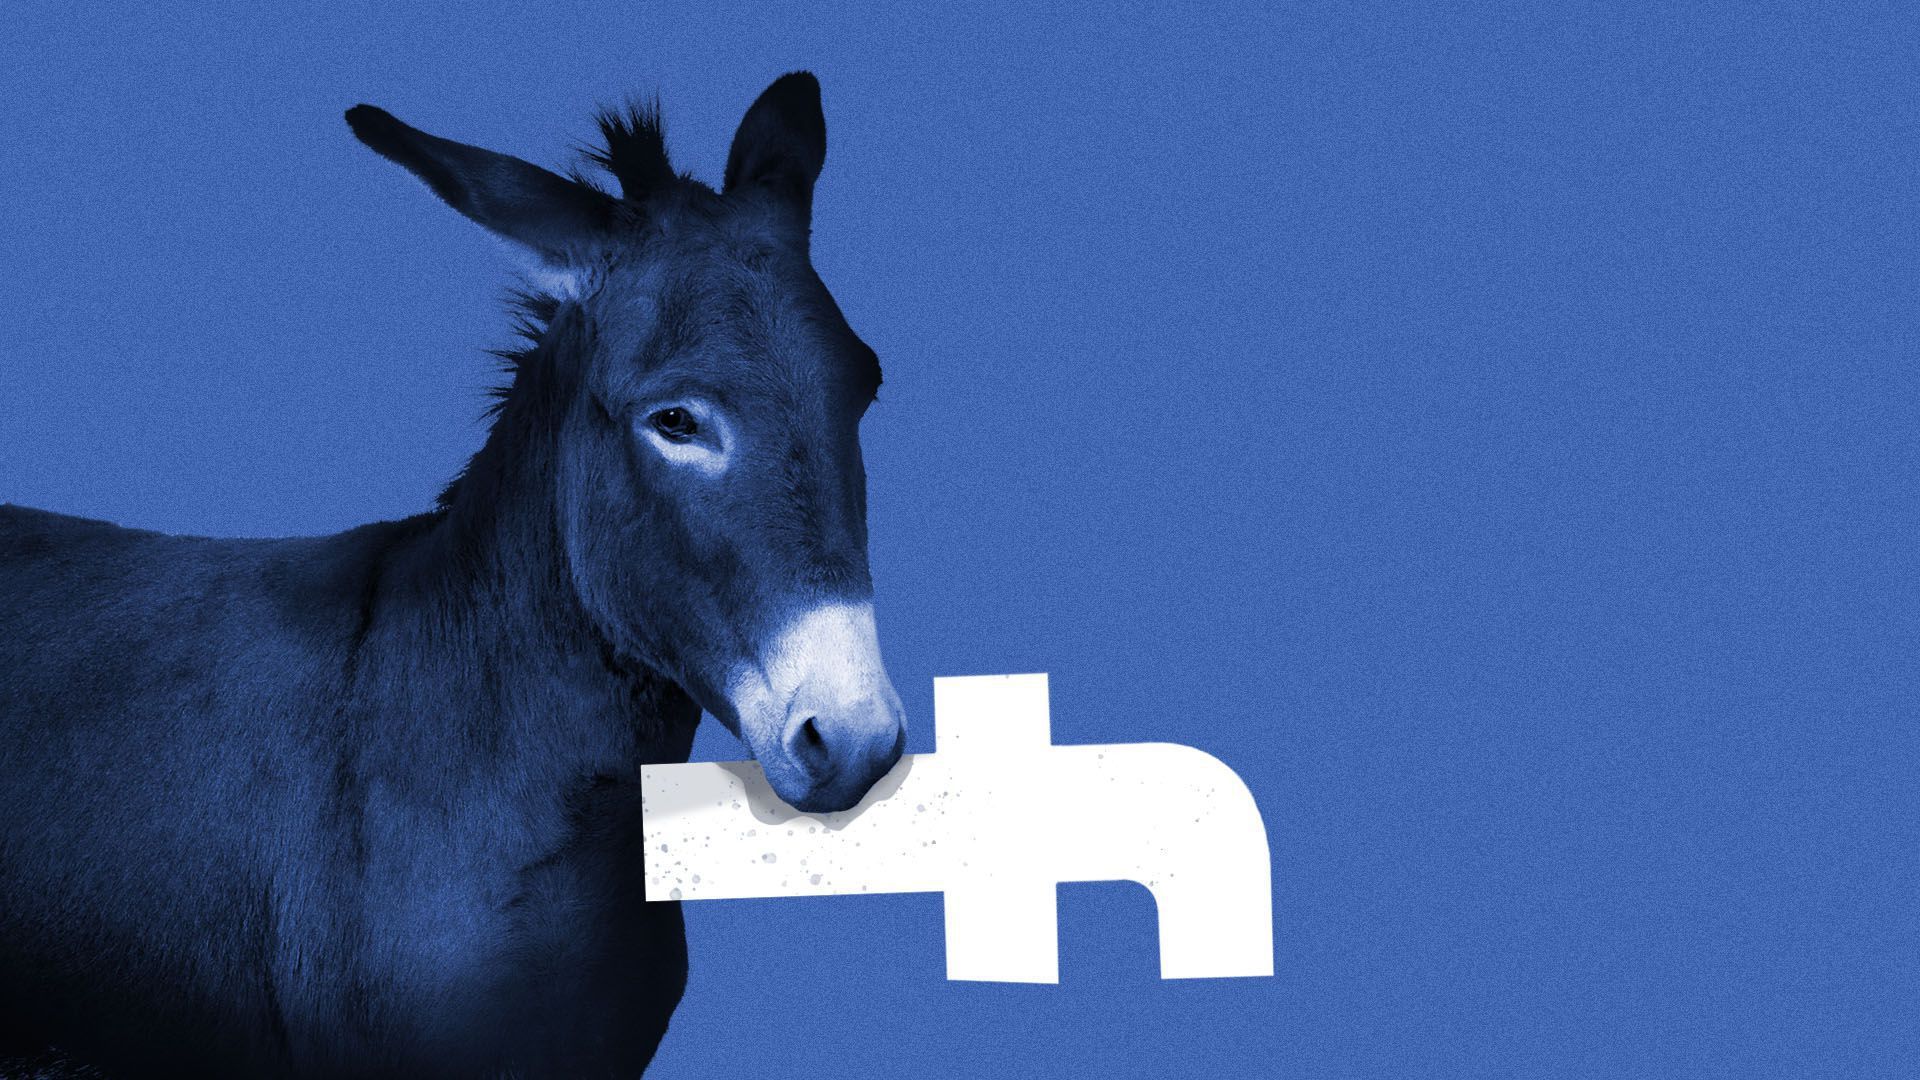 Donkey holding facebook logo